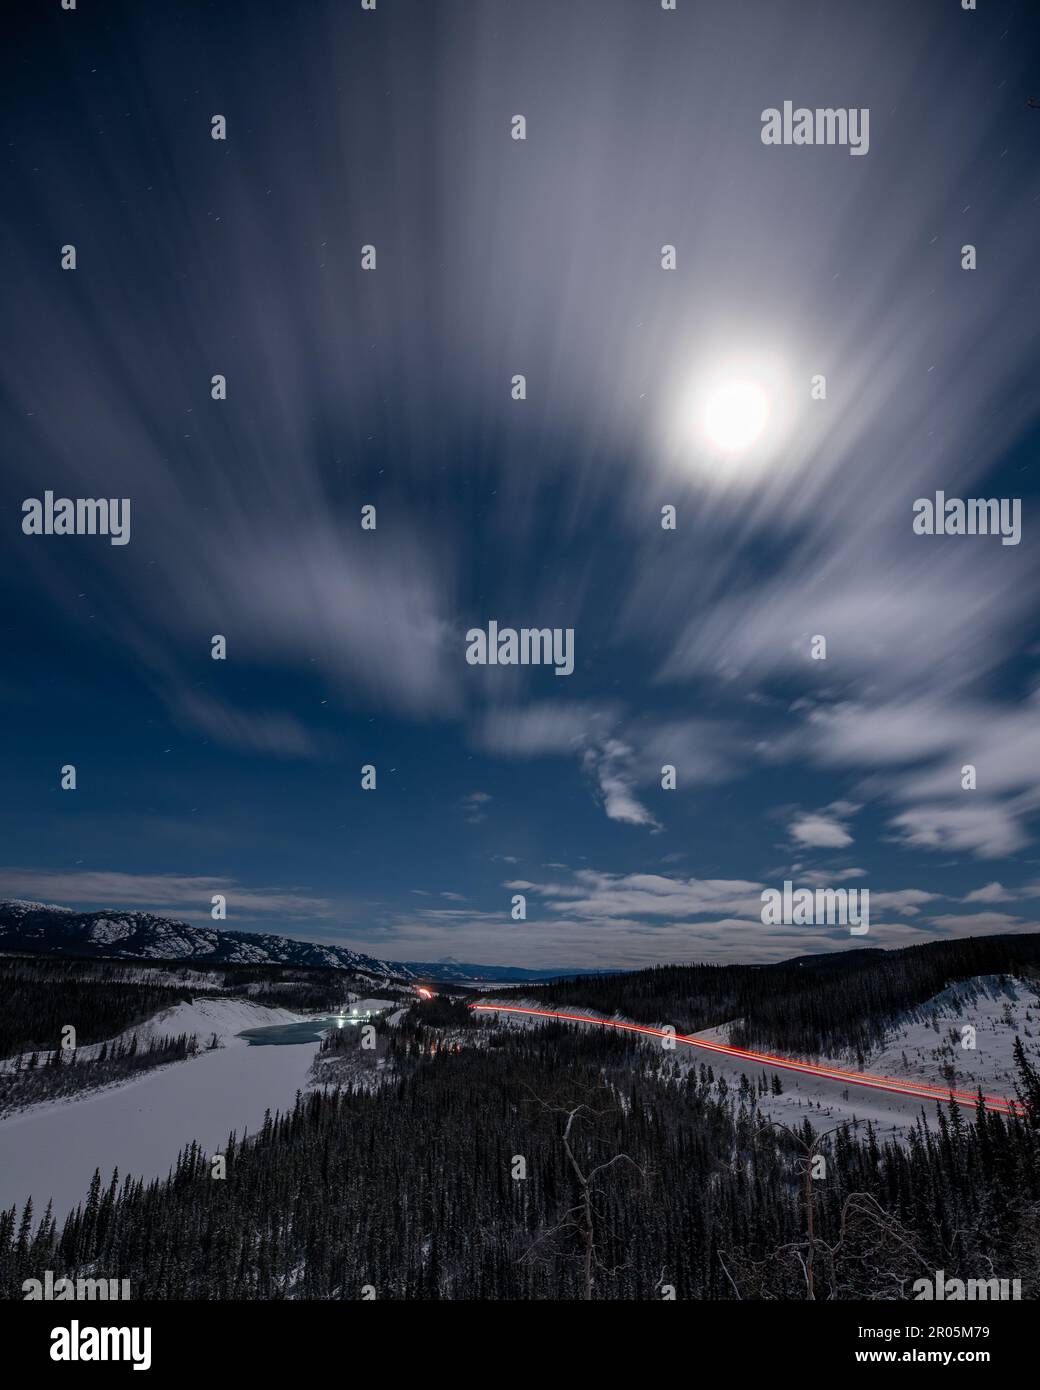 Scena notturna di una strada invernale nel Canada settentrionale, territorio dello Yukon. Preso sulla notte illuminata dalla luna con cielo stellato blu luminoso, abete rosso, alberi che circondano. Foto Stock